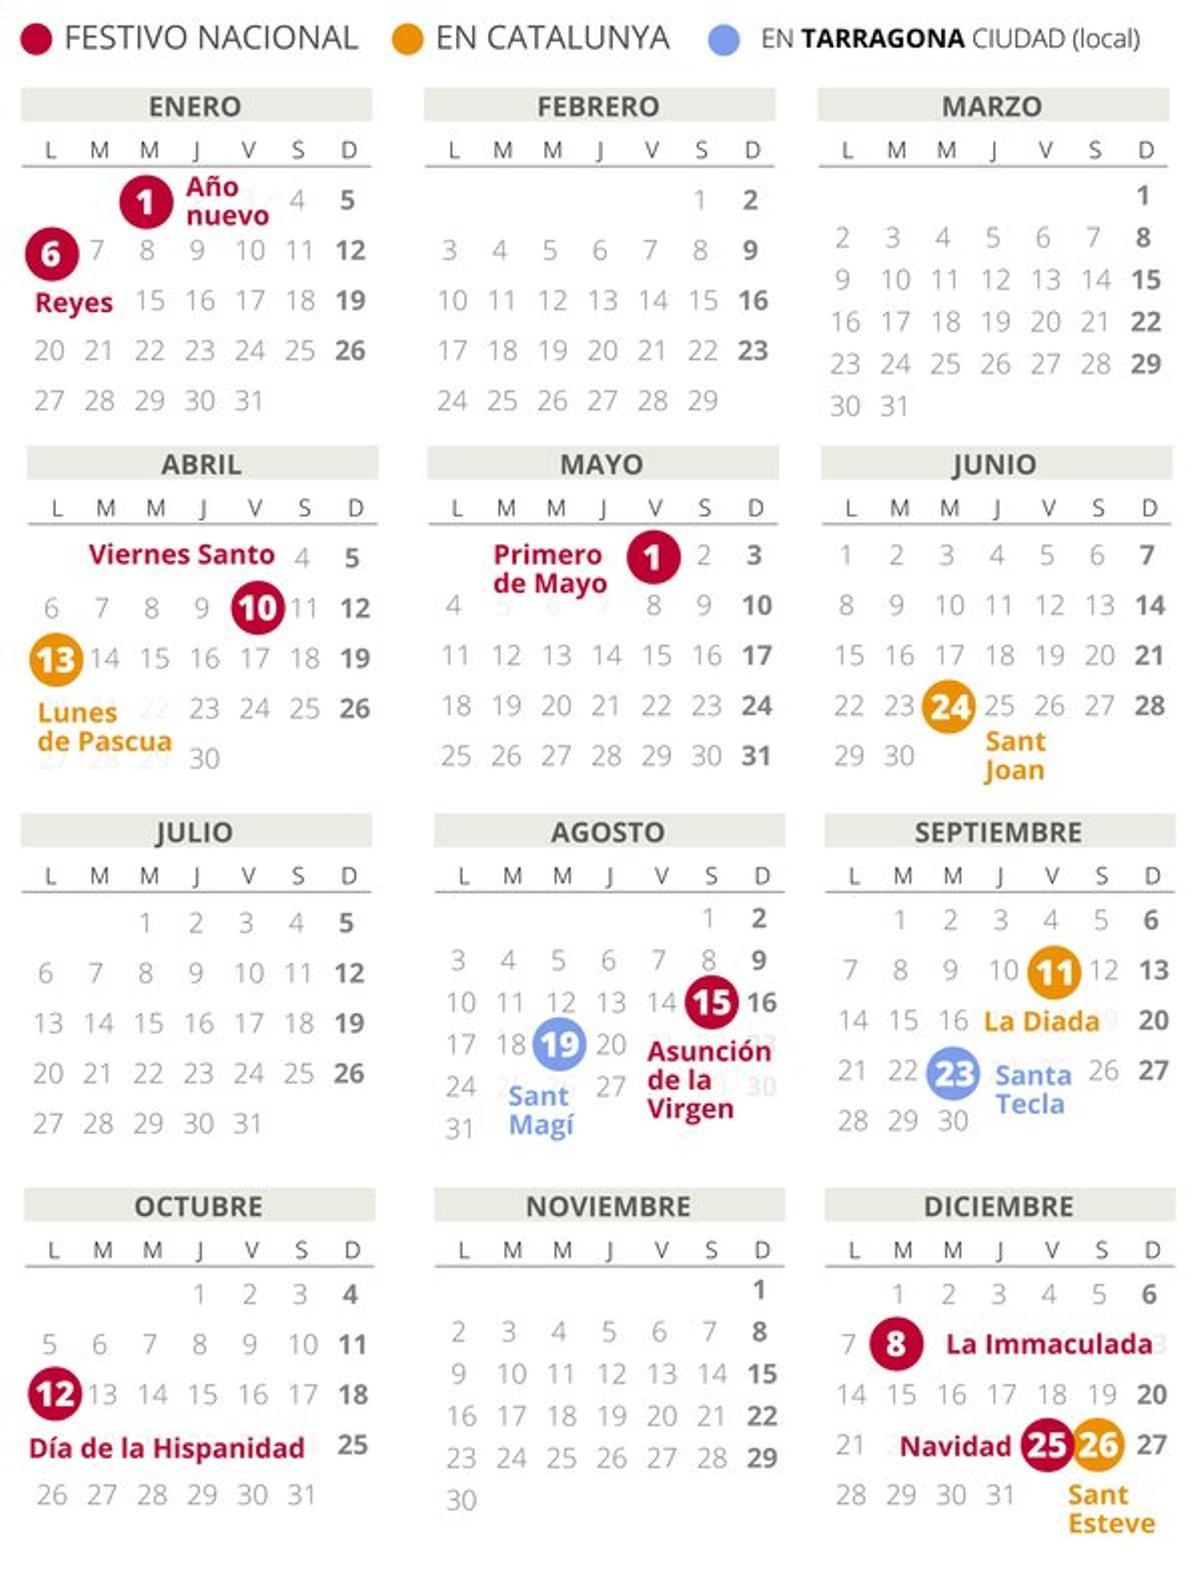 Calendario laboral de Tarragona del 2020.